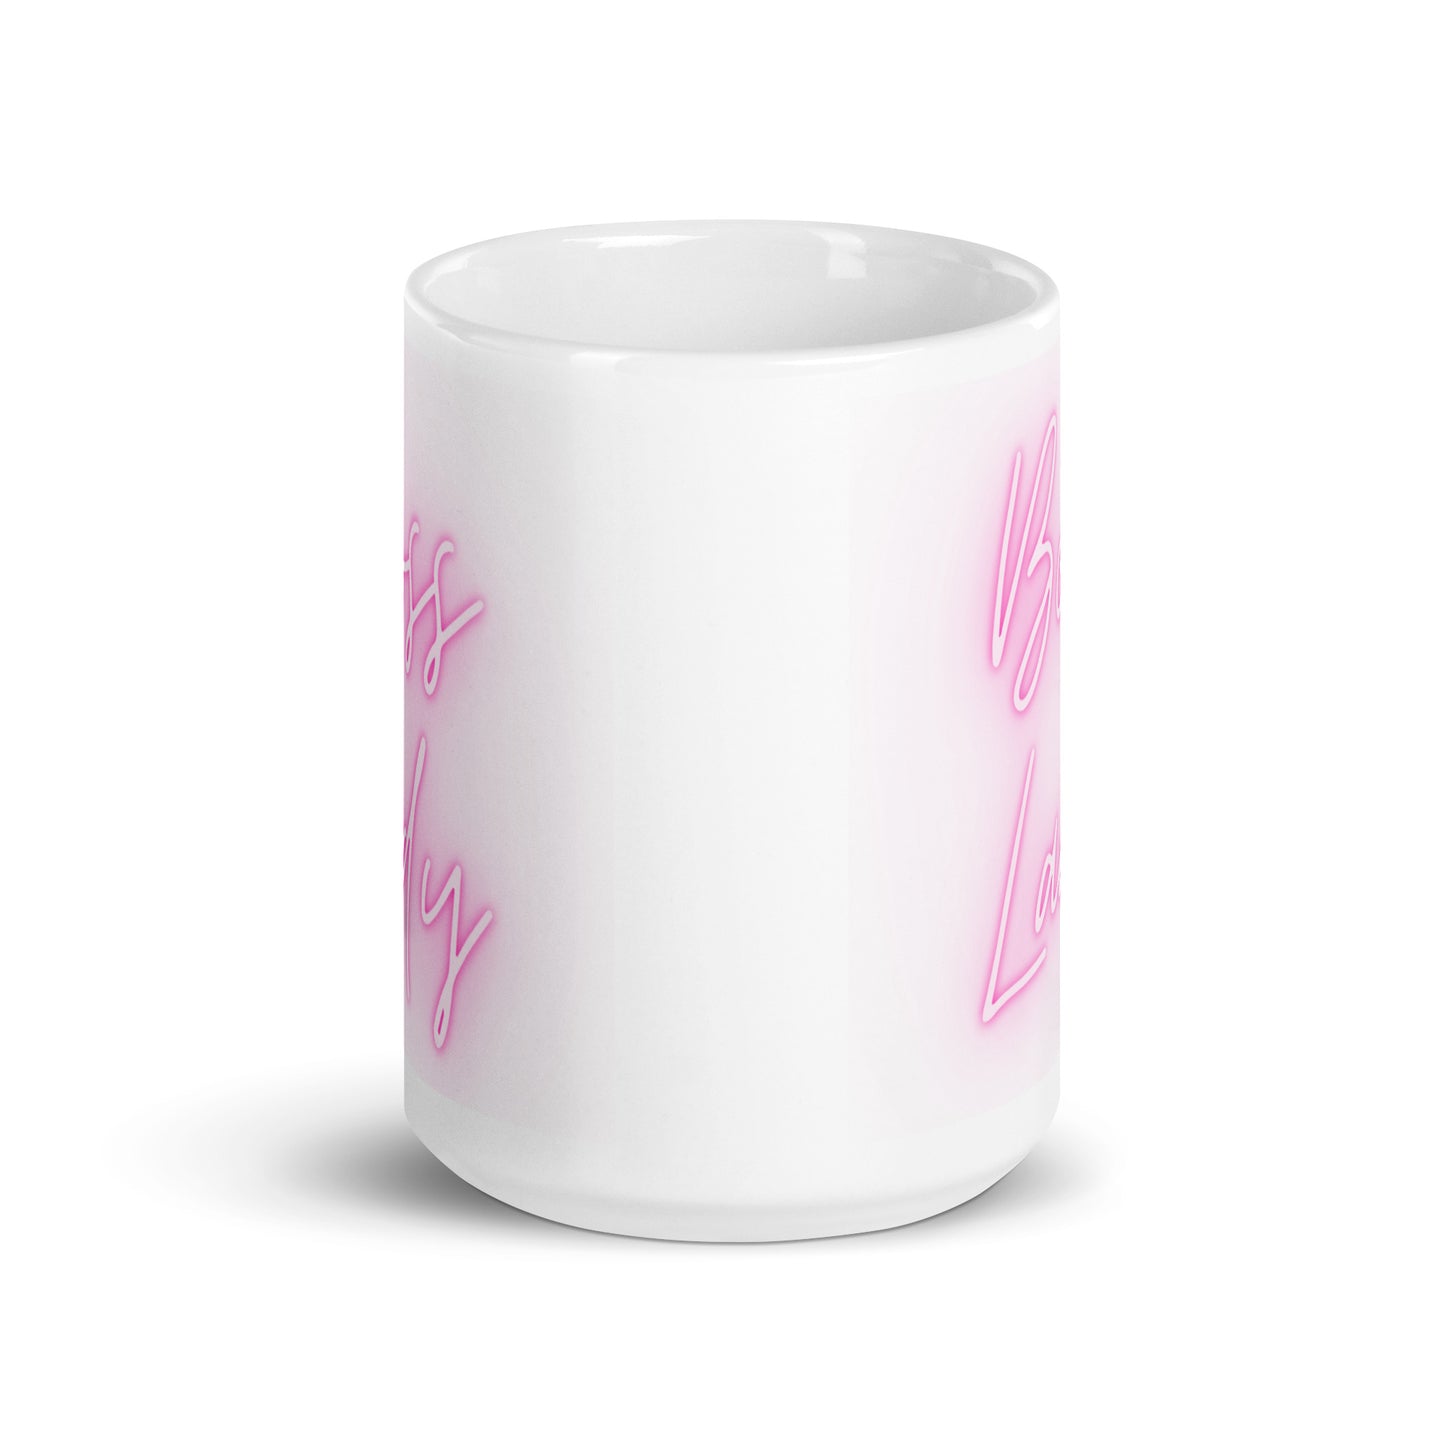 Boss Lady Pink White glossy mug